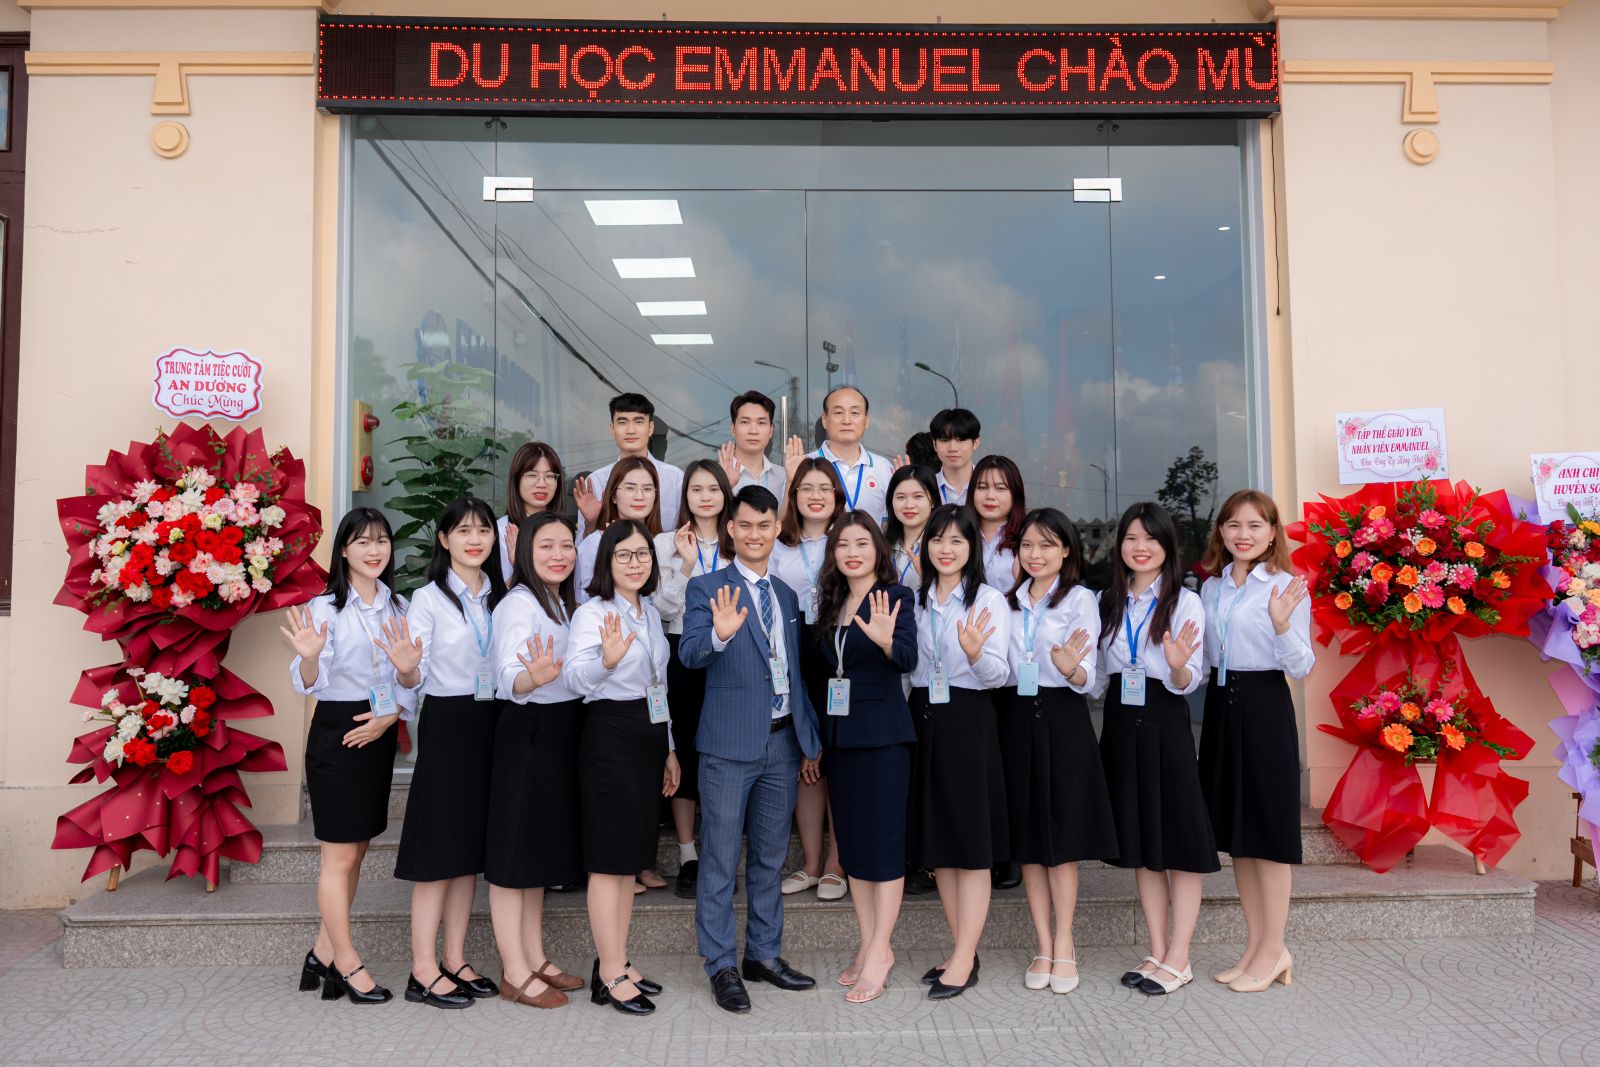 Trung tâm du học Emmanuel tưng bừng khai trương trụ sở mới tại Thị trấn An Dương